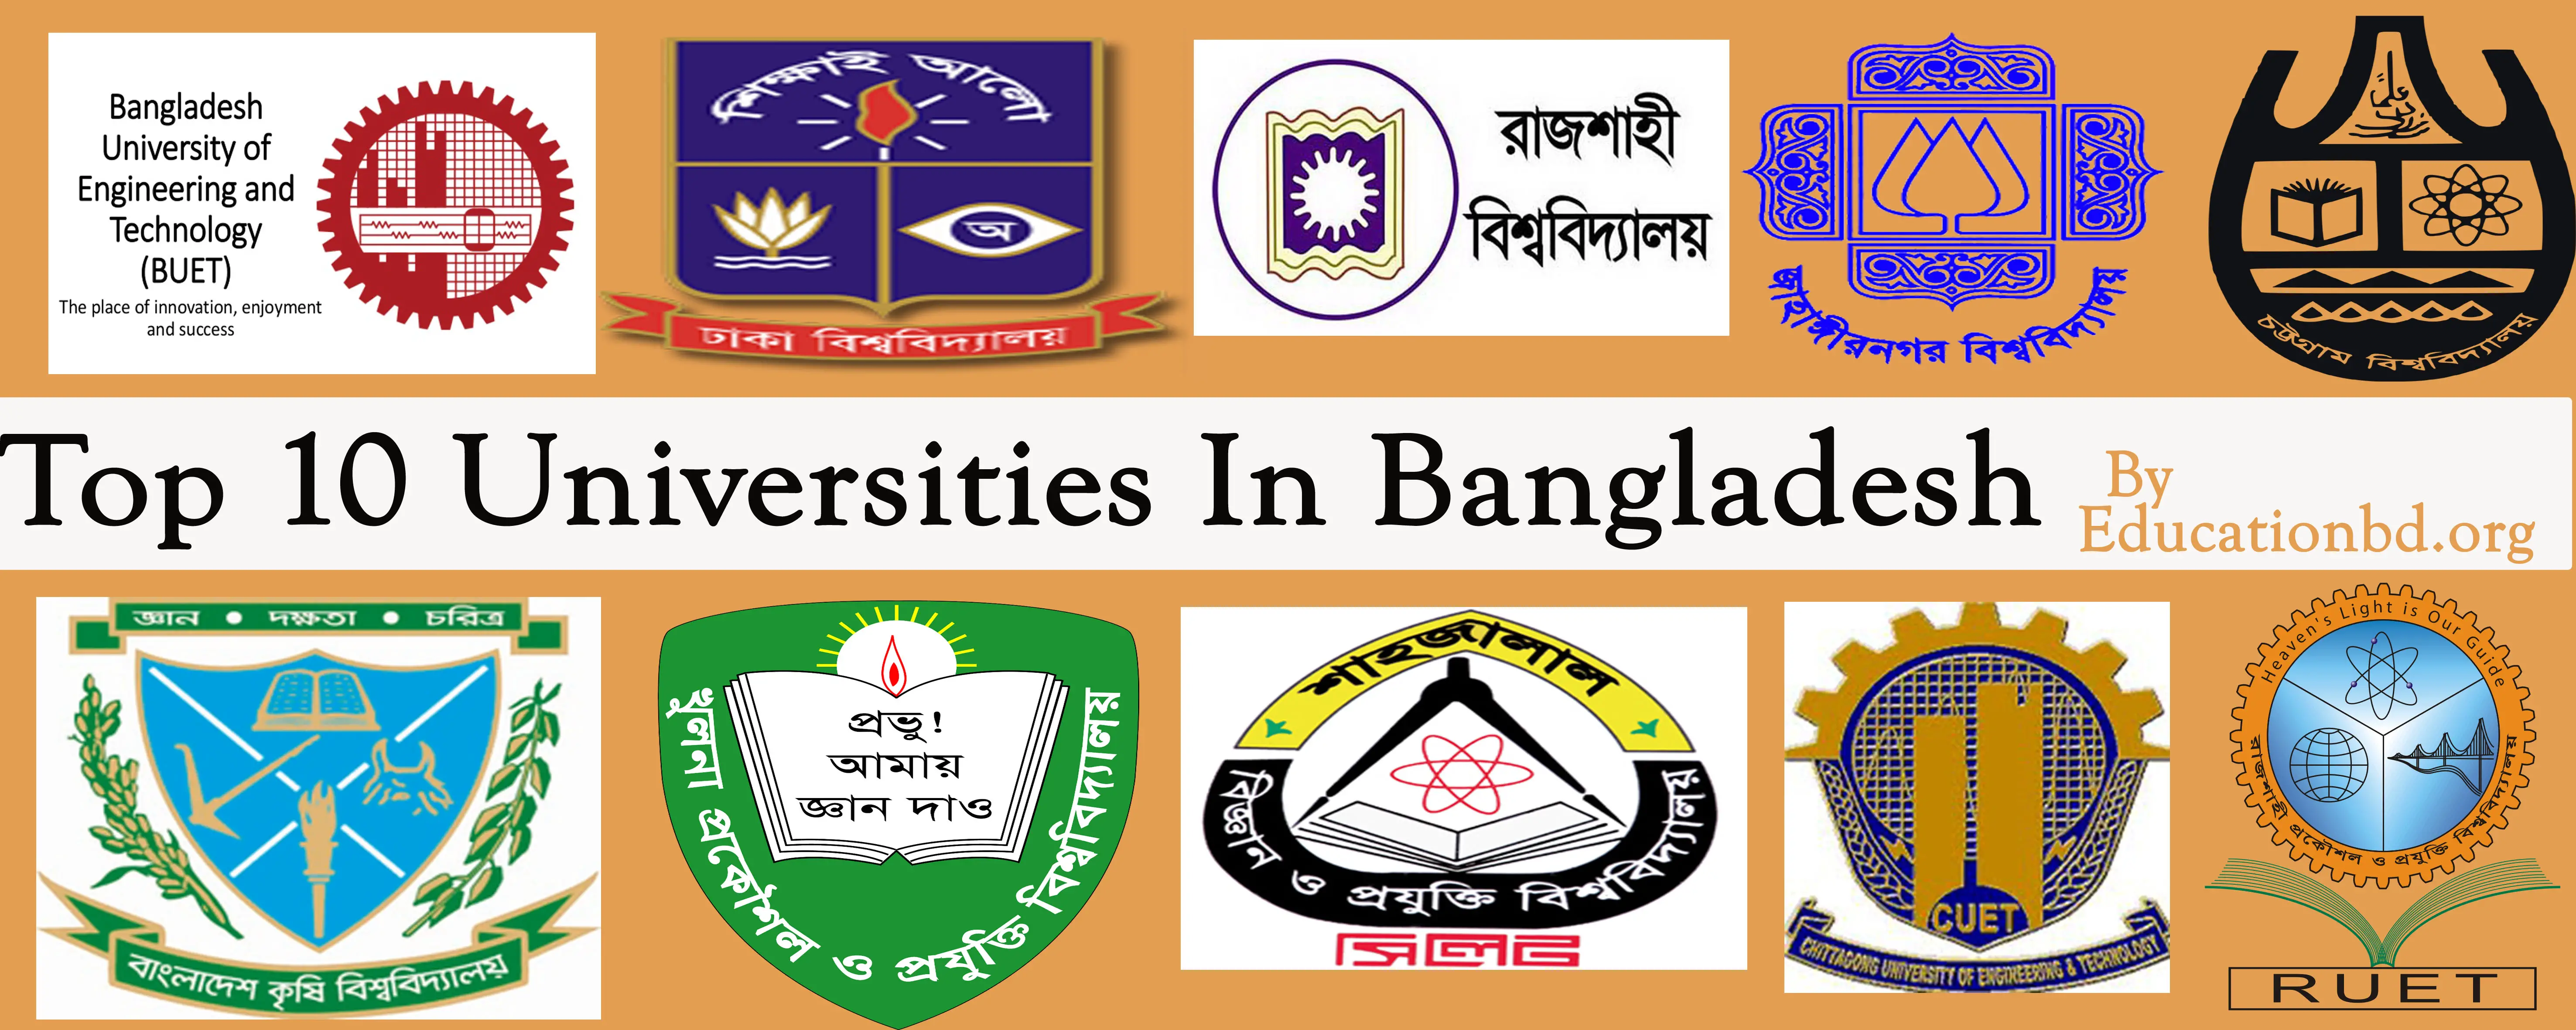 Top 10 Universities in Bangladesh